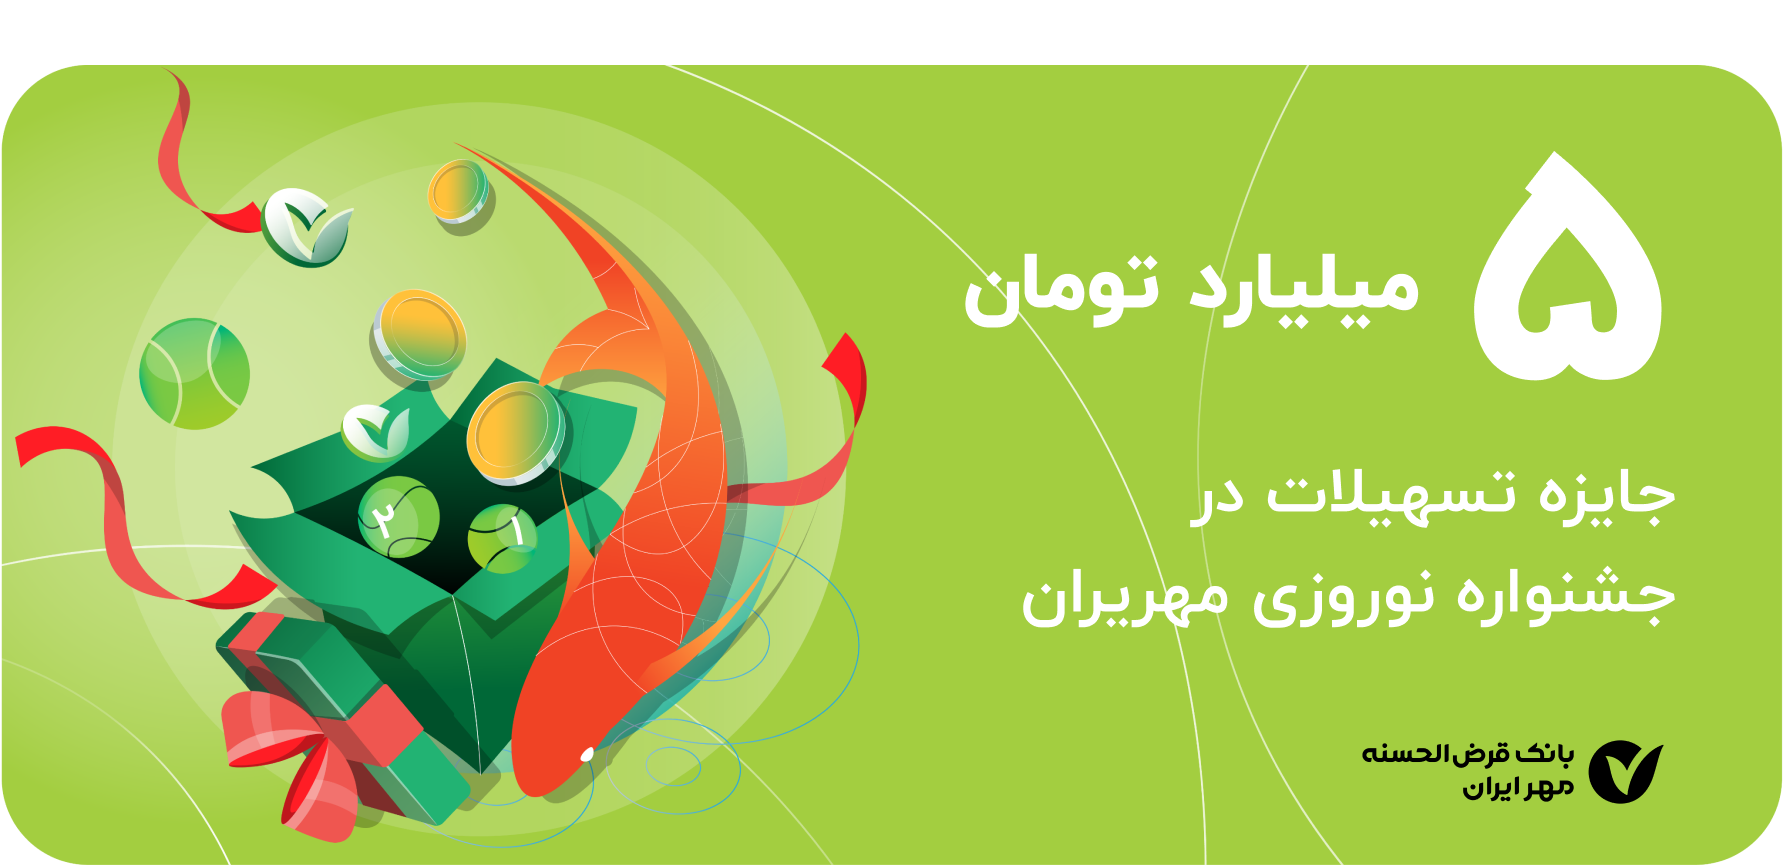 جشنواره نوروزی مهریران با جایزه ویژه ۵ میلیارد تومانی